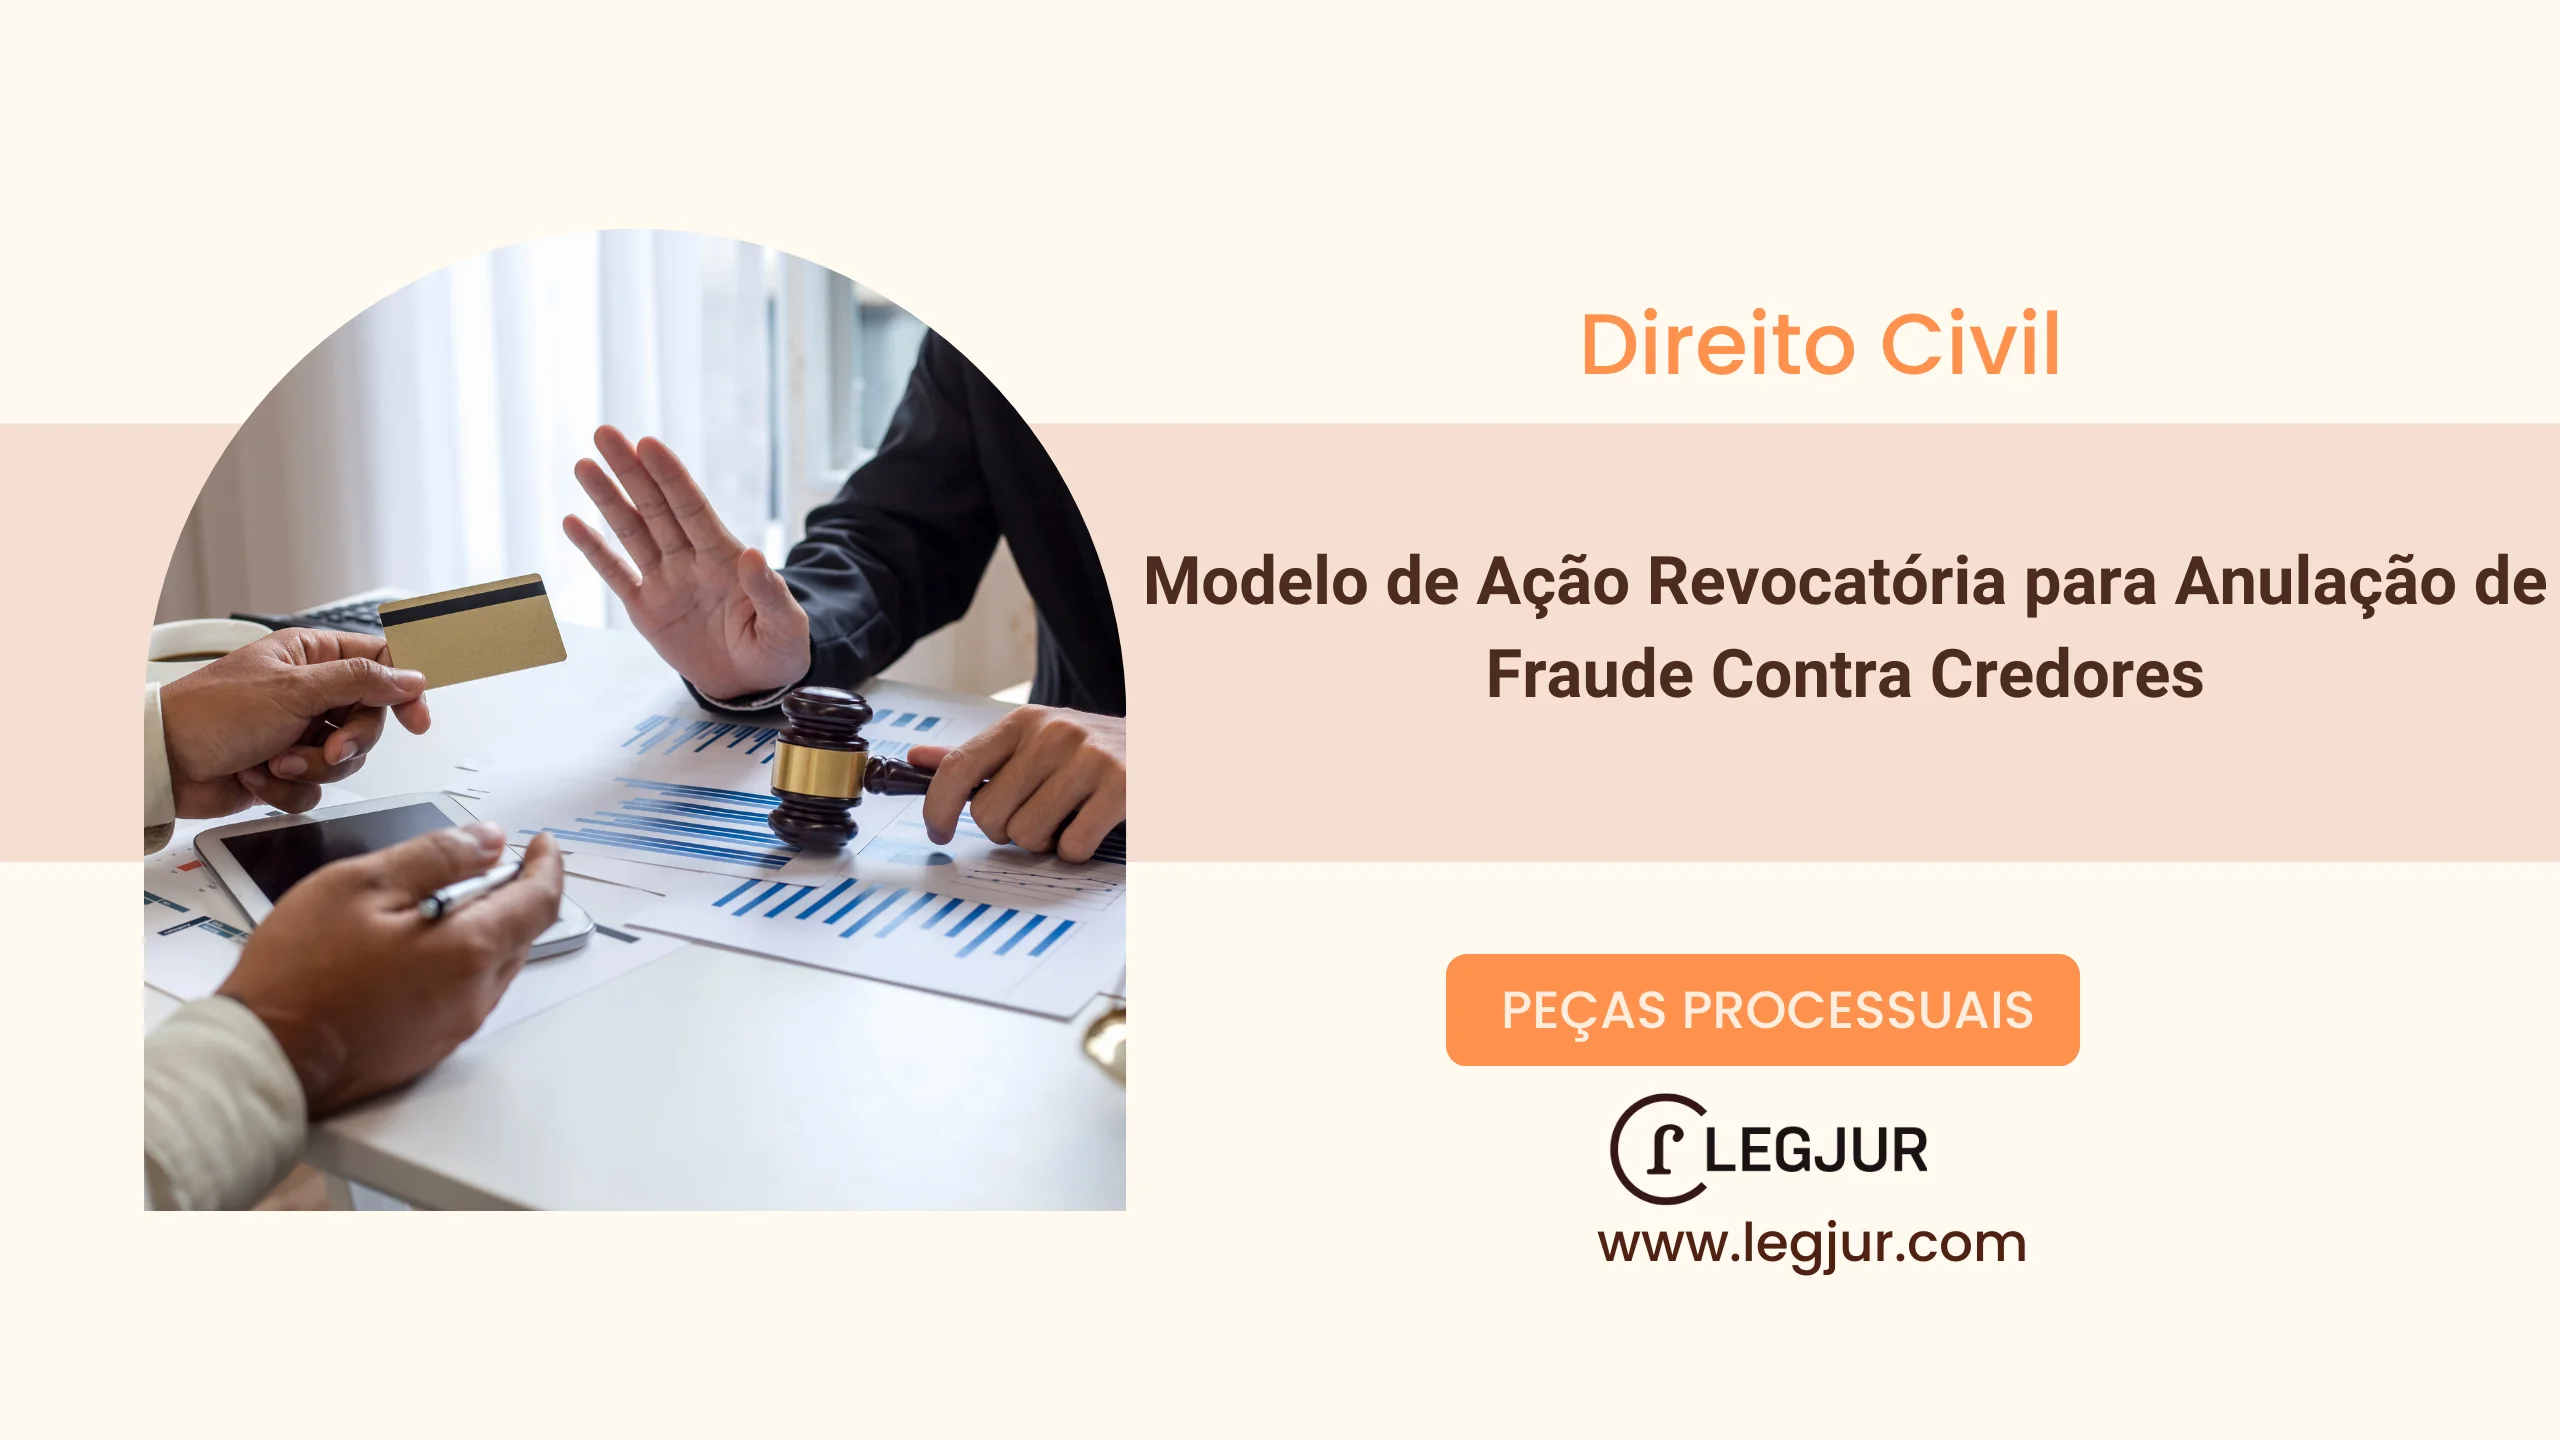 Modelo de Ação Revocatória para Anulação de Fraude Contra Credores